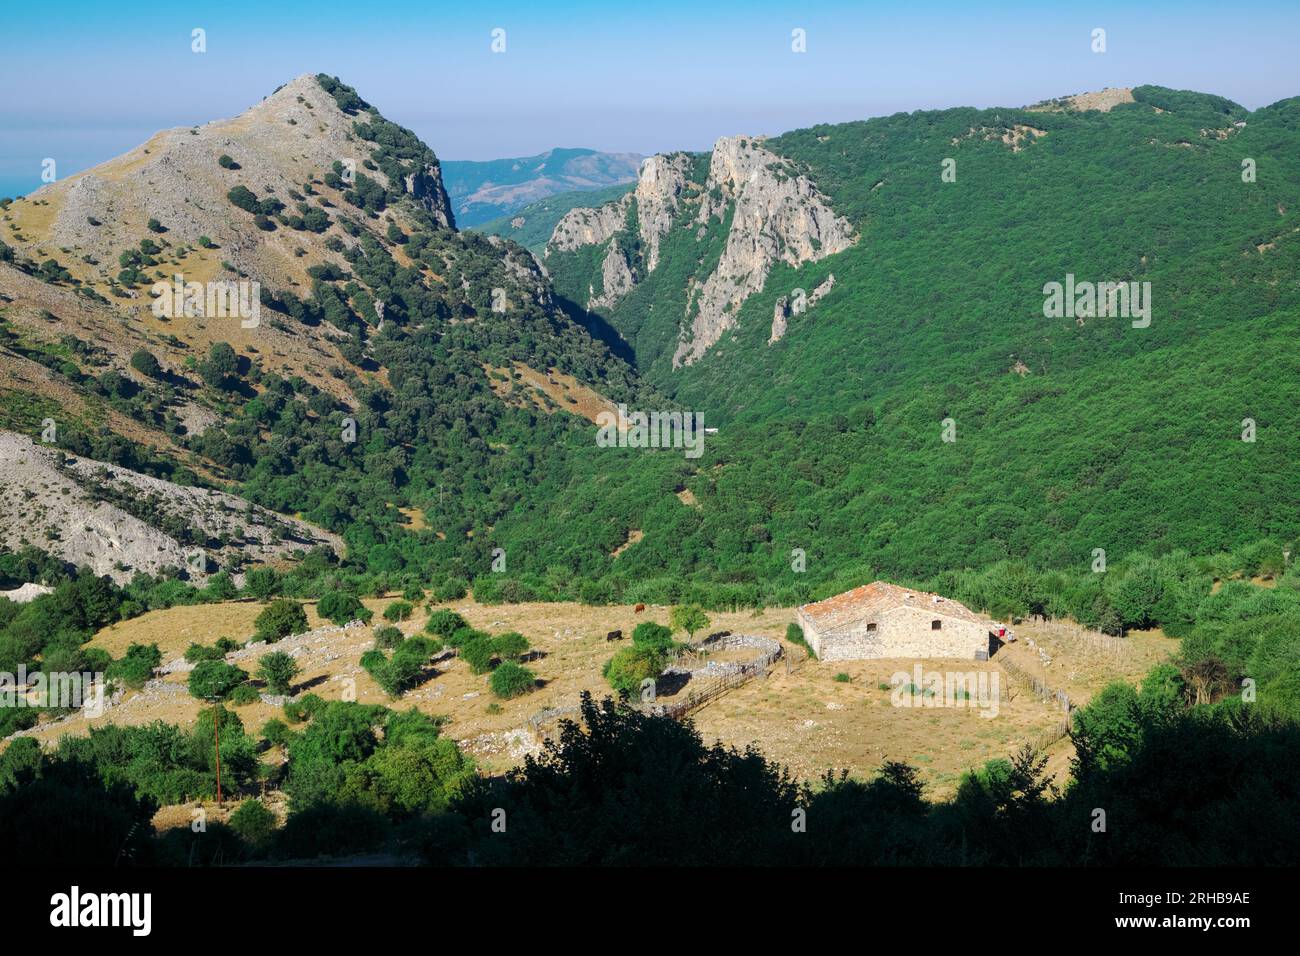 Edificio rurale nel paesaggio naturale della Gola di Faguara nel Parco delle Madonie, Sicilia, Italia Foto Stock